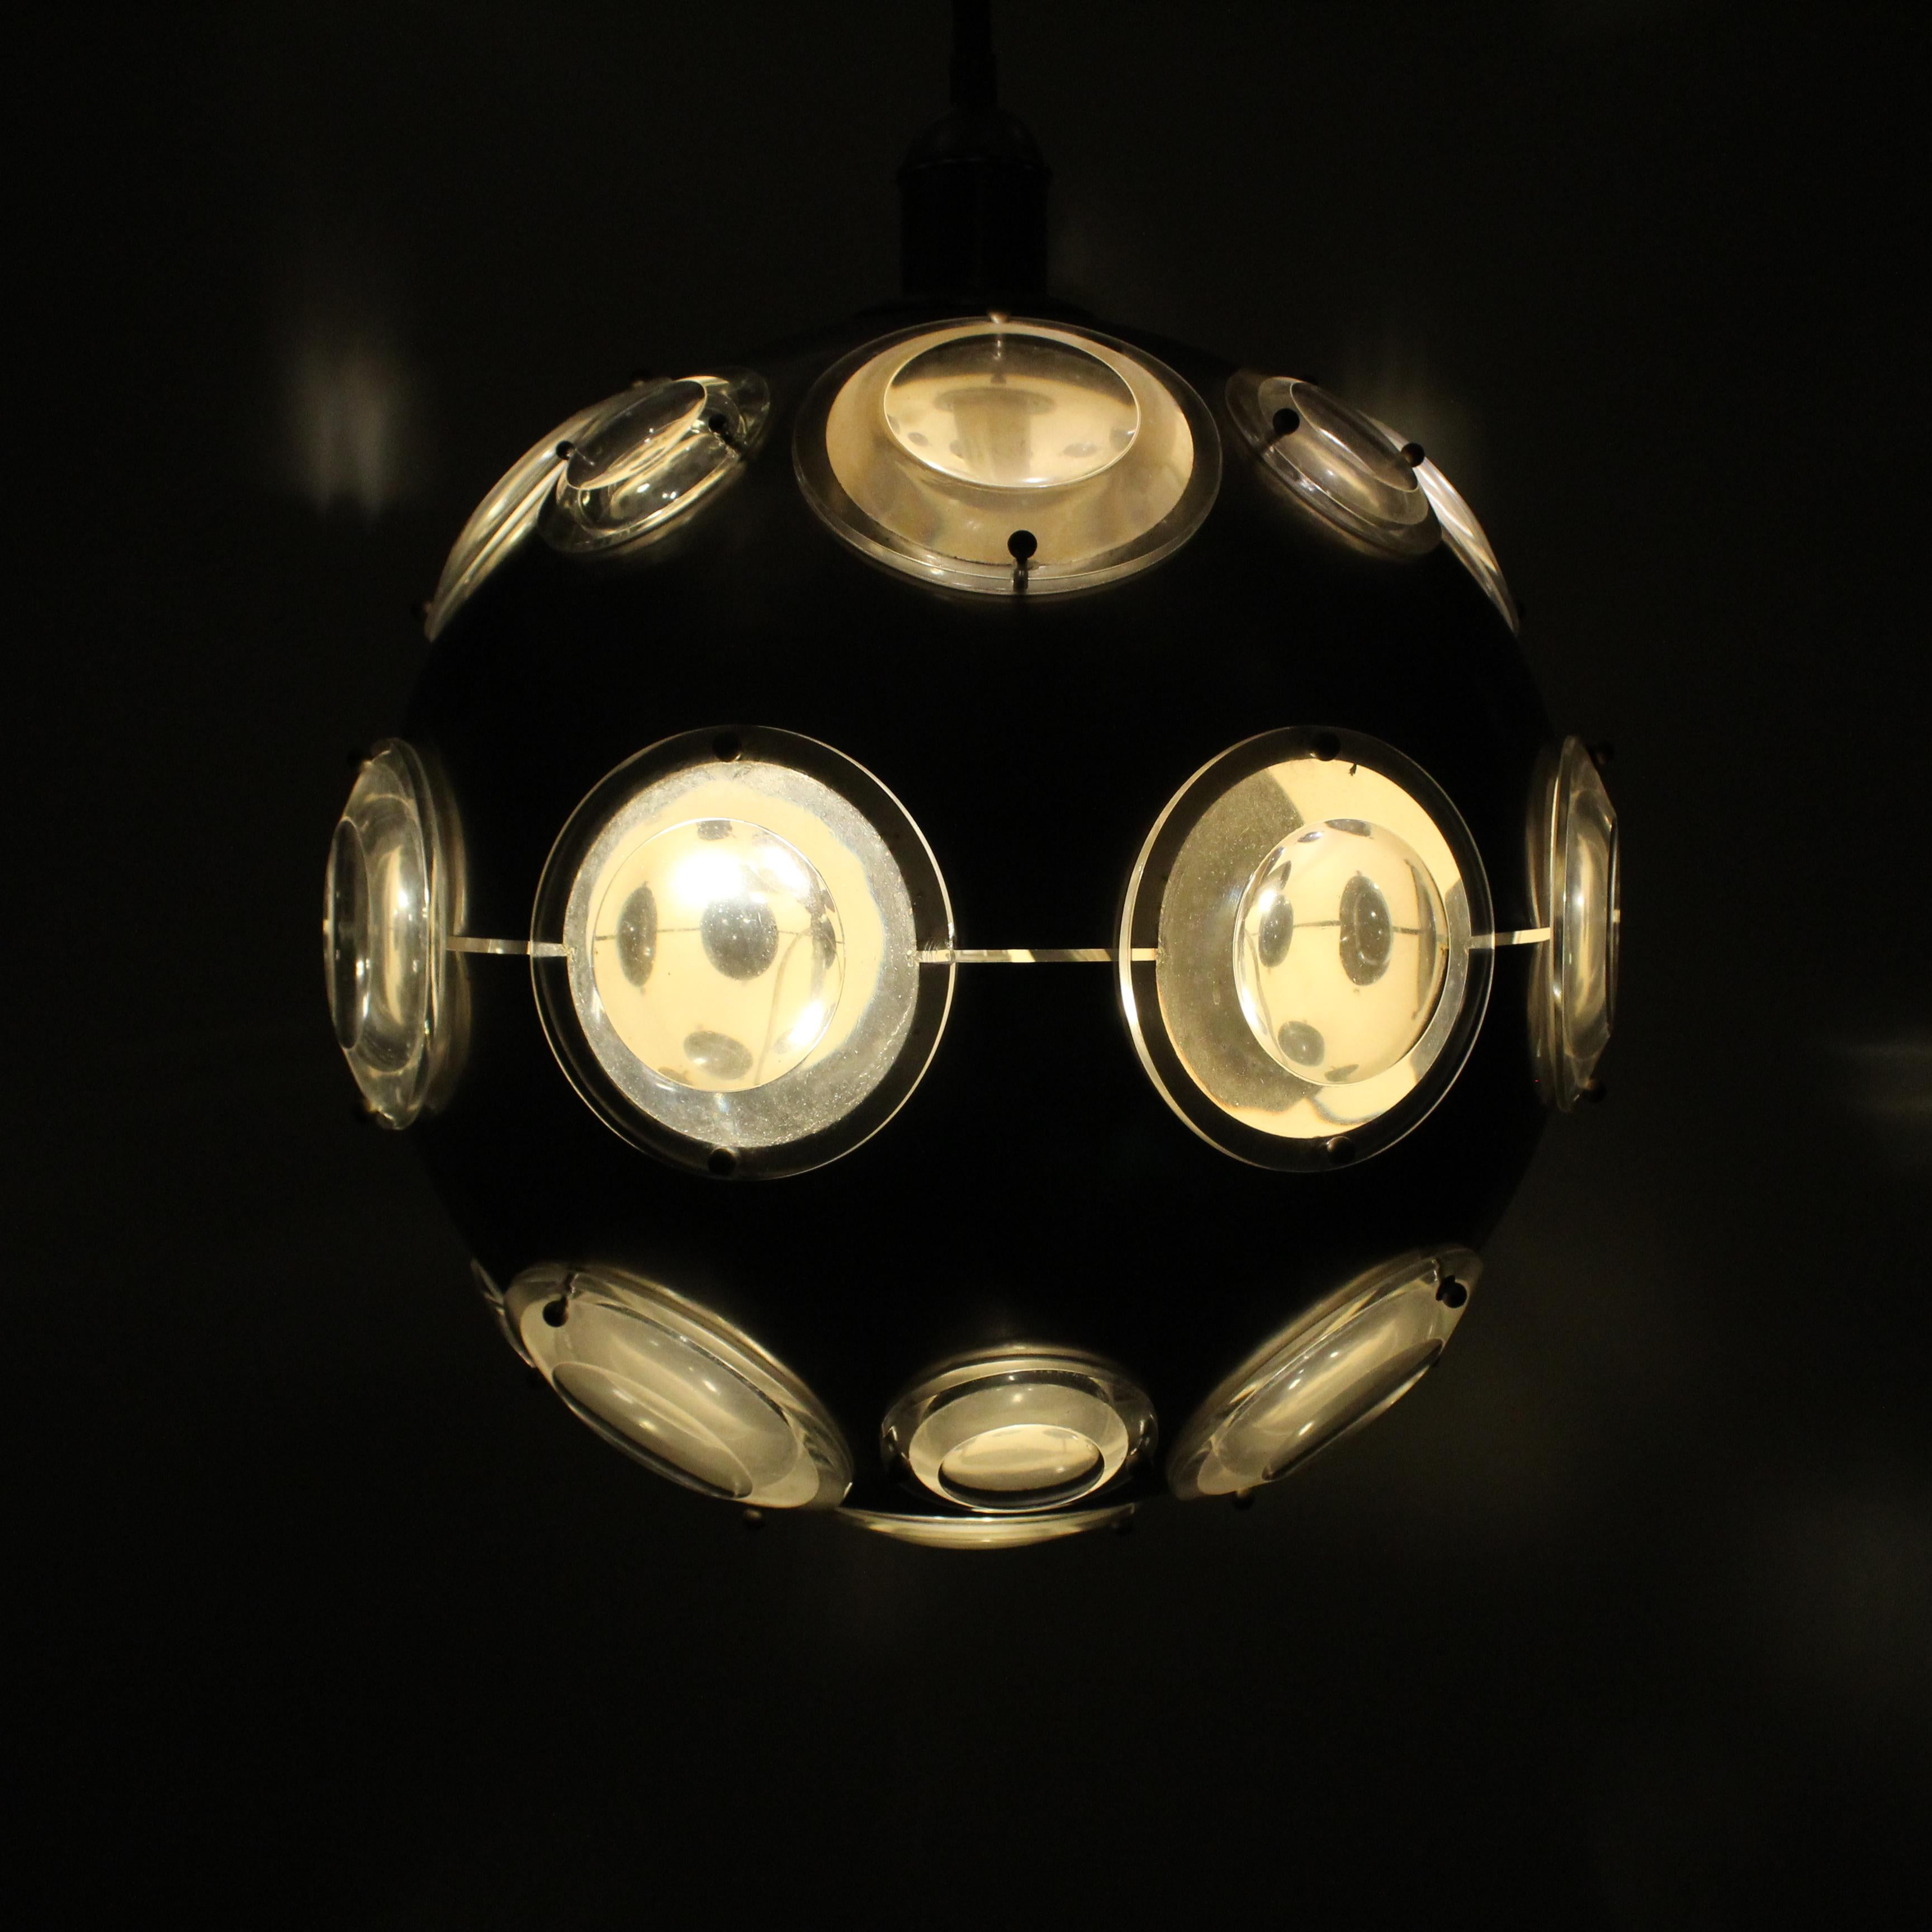 La lampe suspendue en métal chromé avec diffuseurs en verre, conçue par Oscar Torlasco aux alentours de 1970, est un excellent exemple du design brillant et futuriste de son époque. Cette lampe offre une combinaison fascinante de matériaux et de